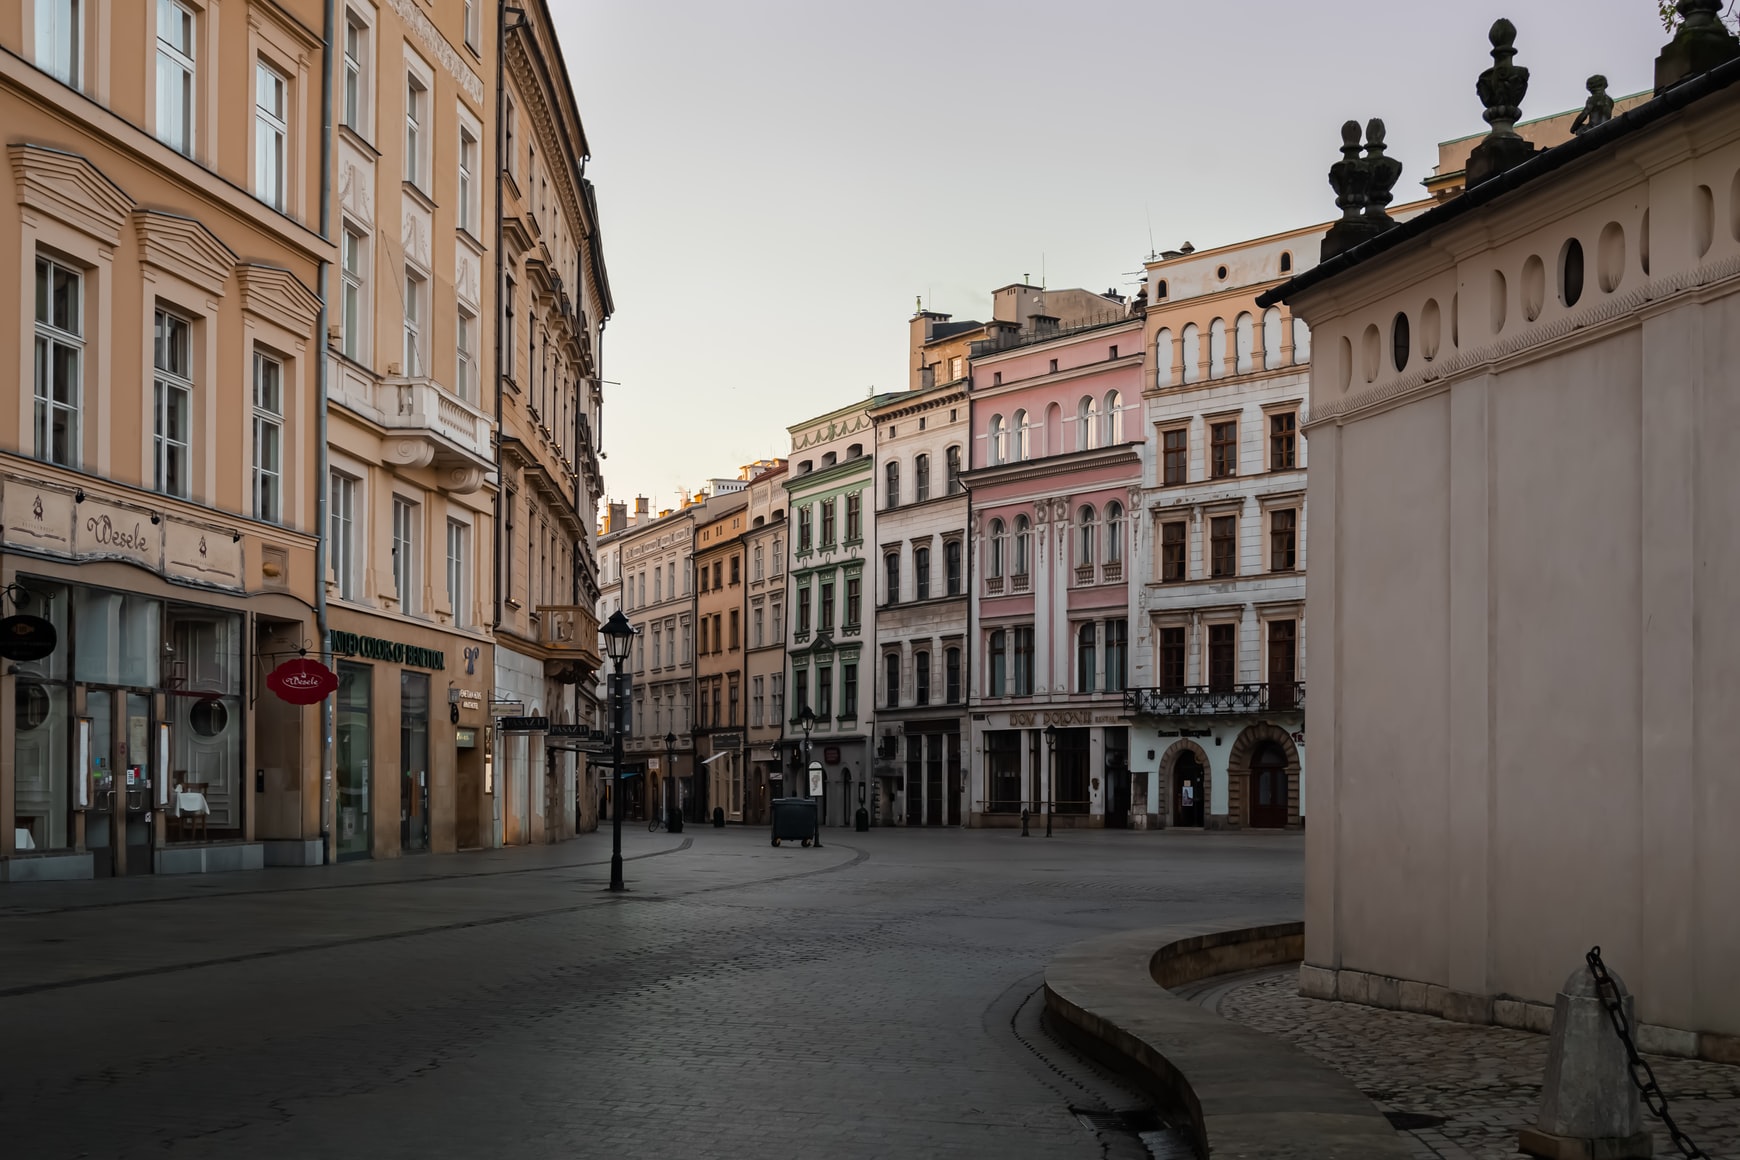 Staden Krakow i Polen